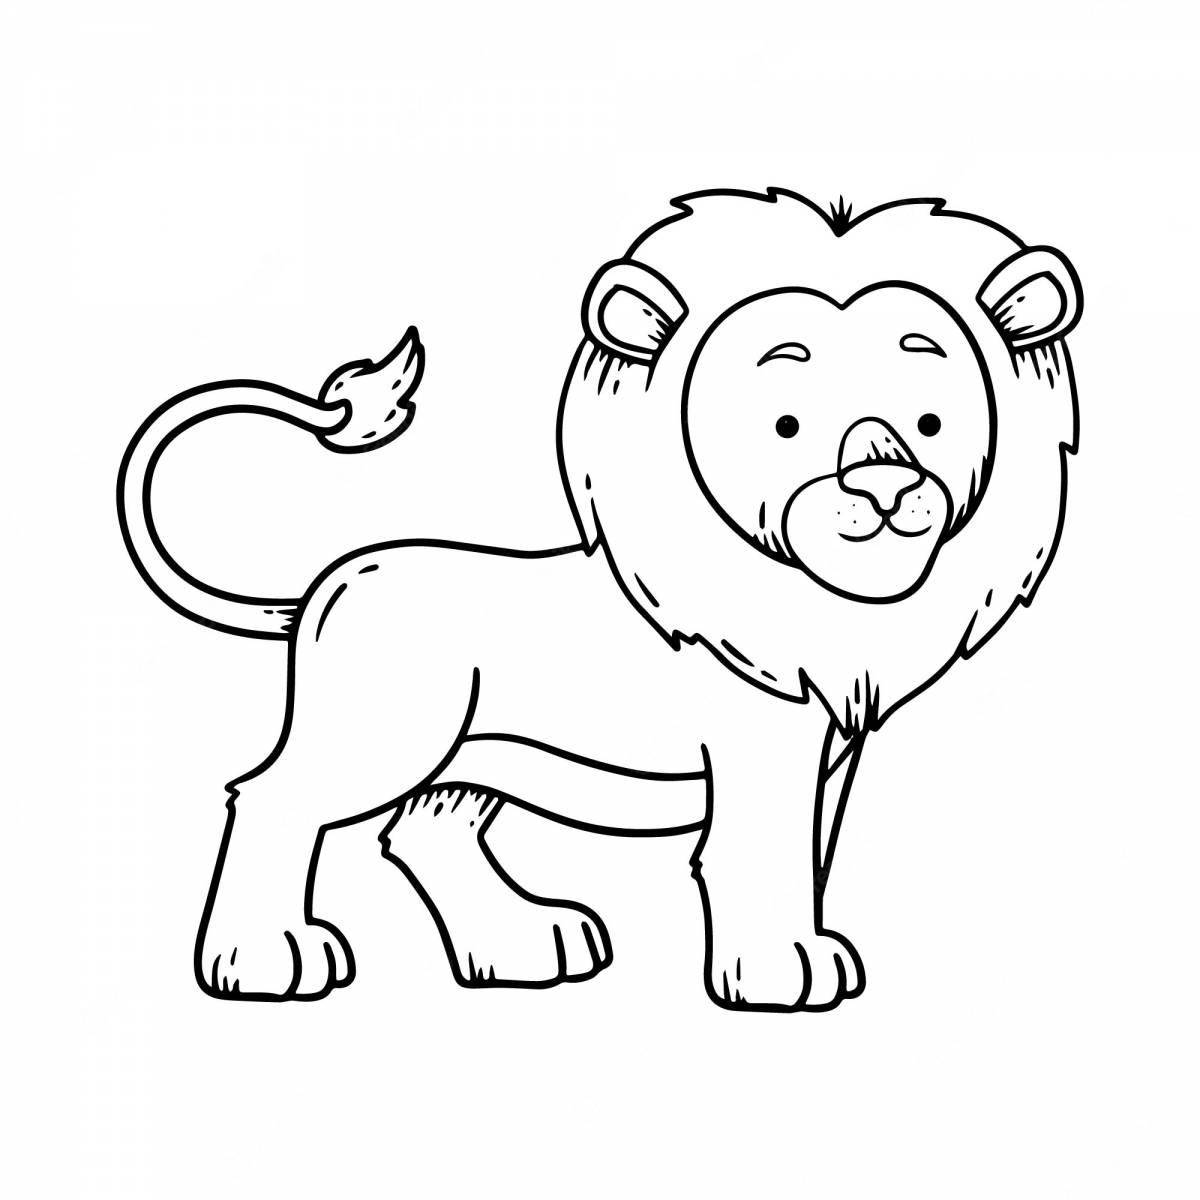 Сложная раскраска льва для детей 3-4 лет